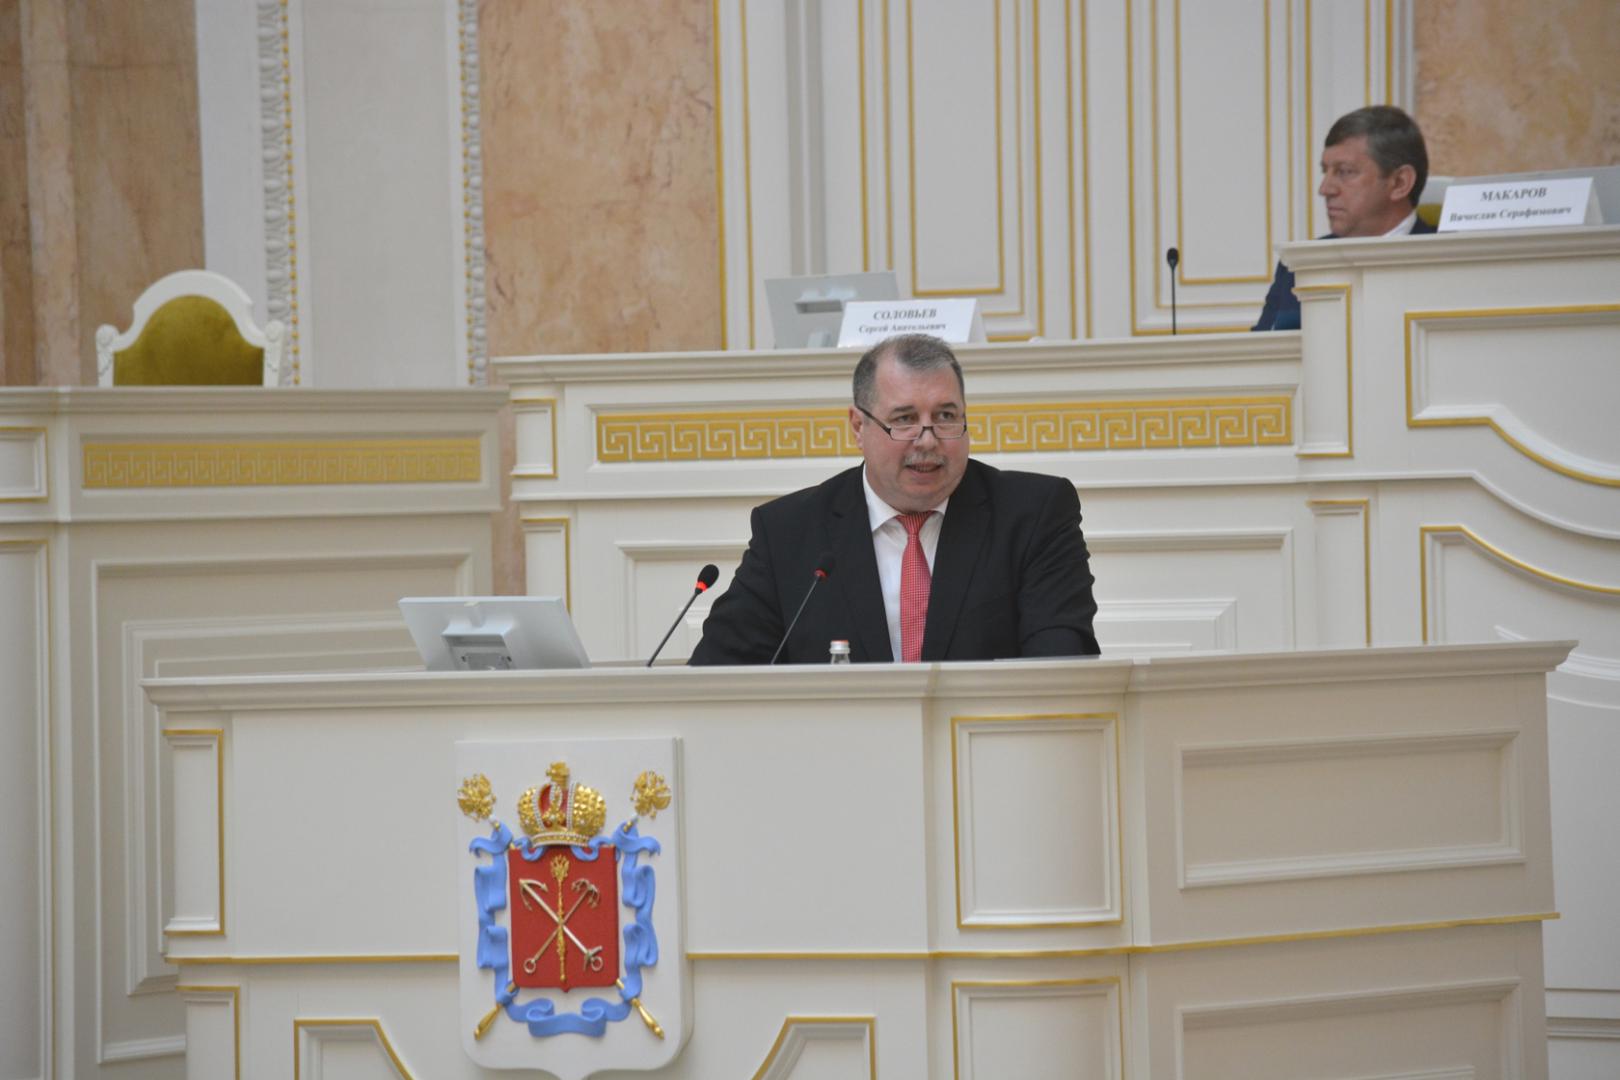 Вадим Лопатников выступил в Законодательном Собрании Санкт-Петербурга с отчетом о работе Контрольно-счетной палаты за 2016 год